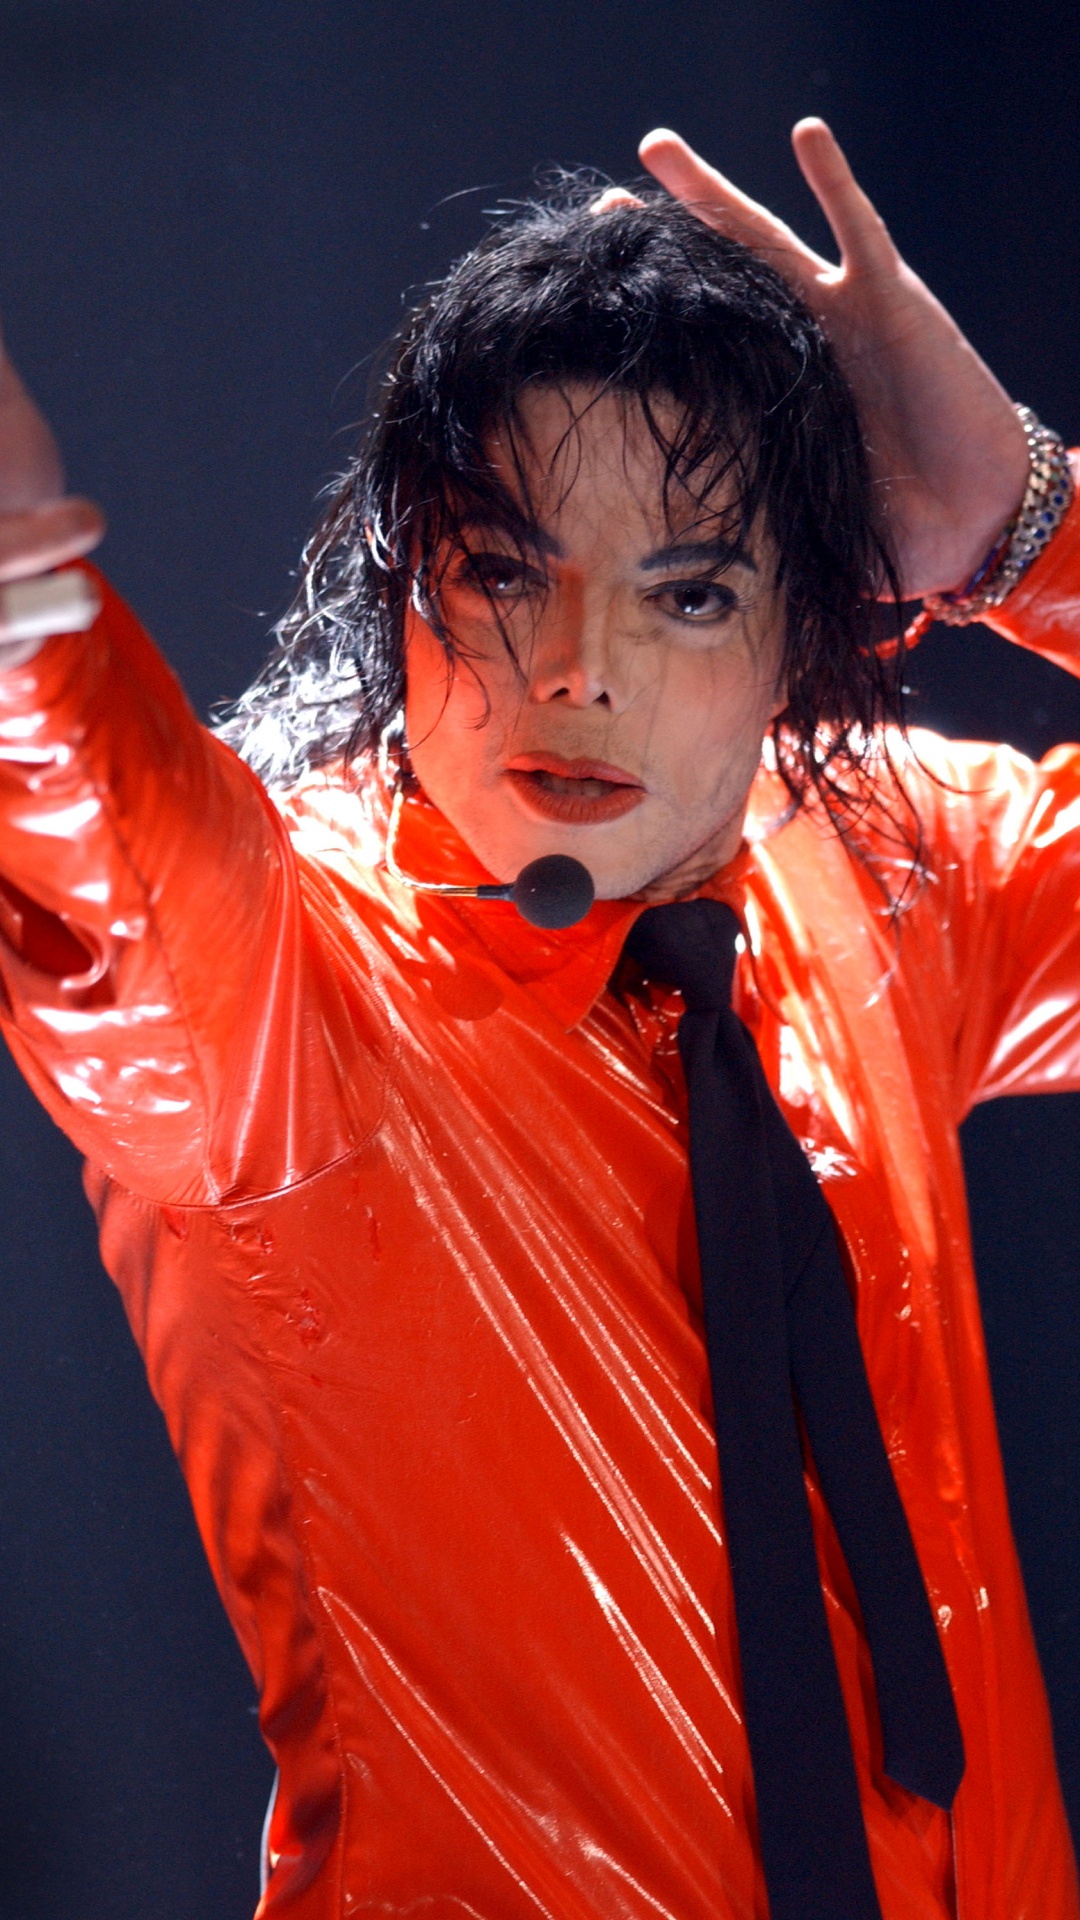 迈克尔*杰克逊, 性能, 红色的, 歌手, 额头 壁纸 1080x1920 允许